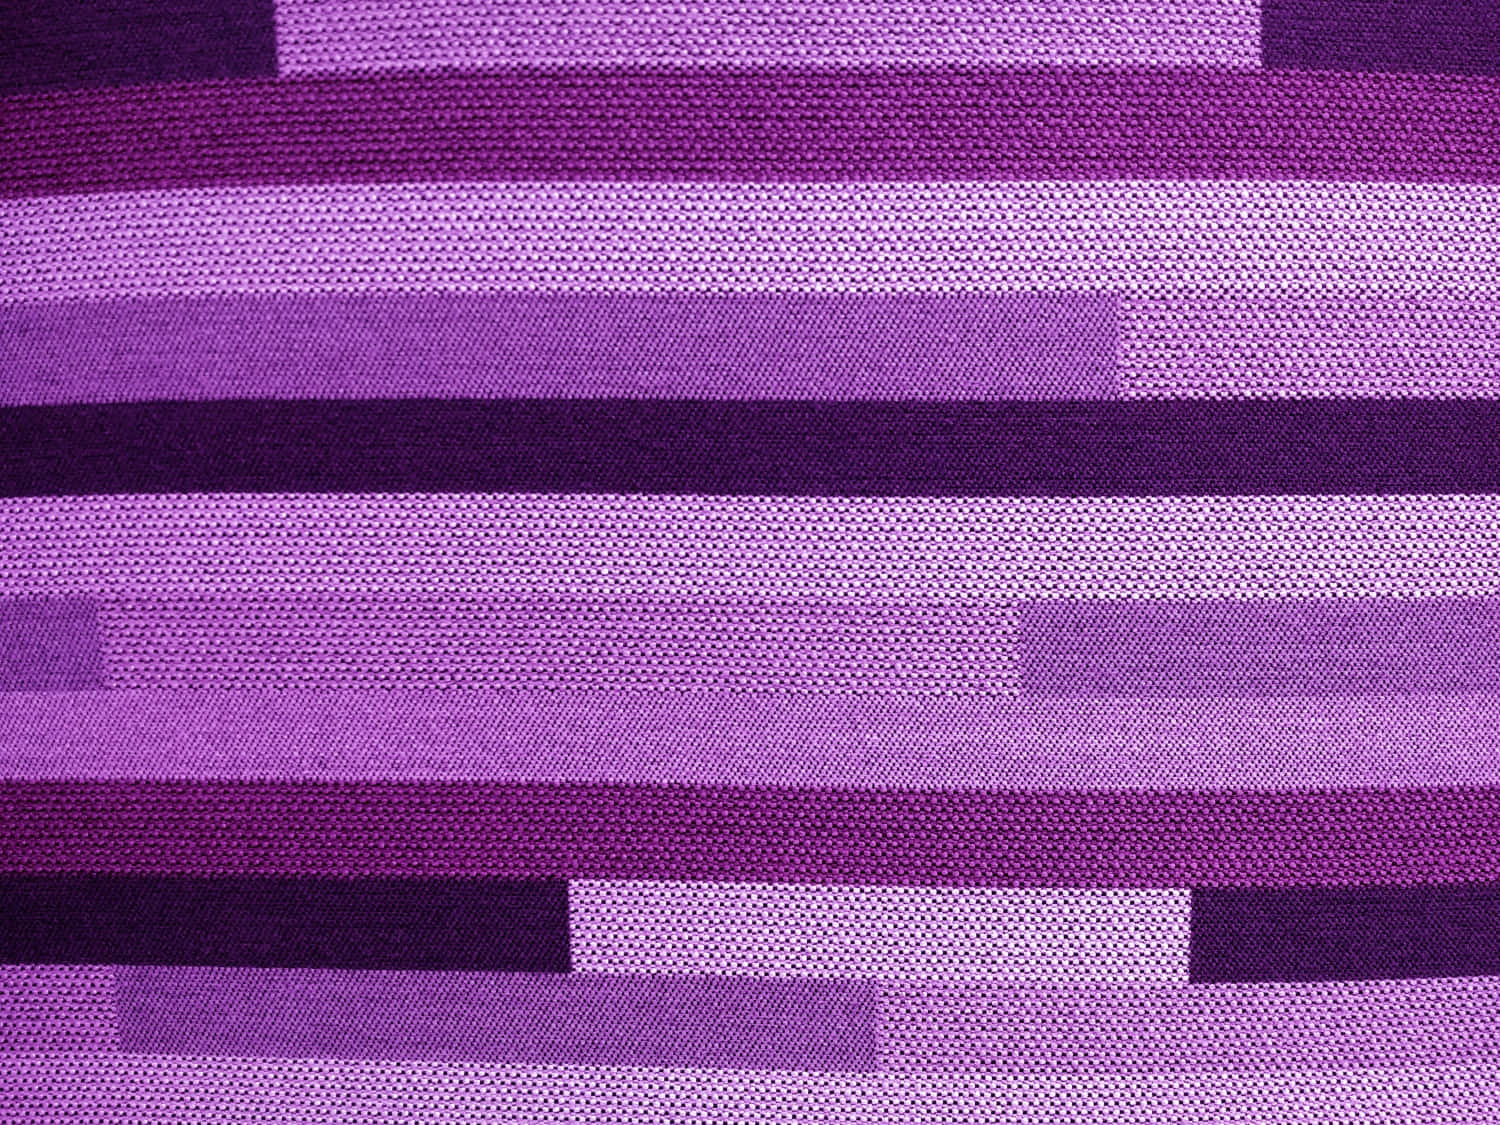 Imágenesde Texturas De Tela A Rayas En Color Púrpura.